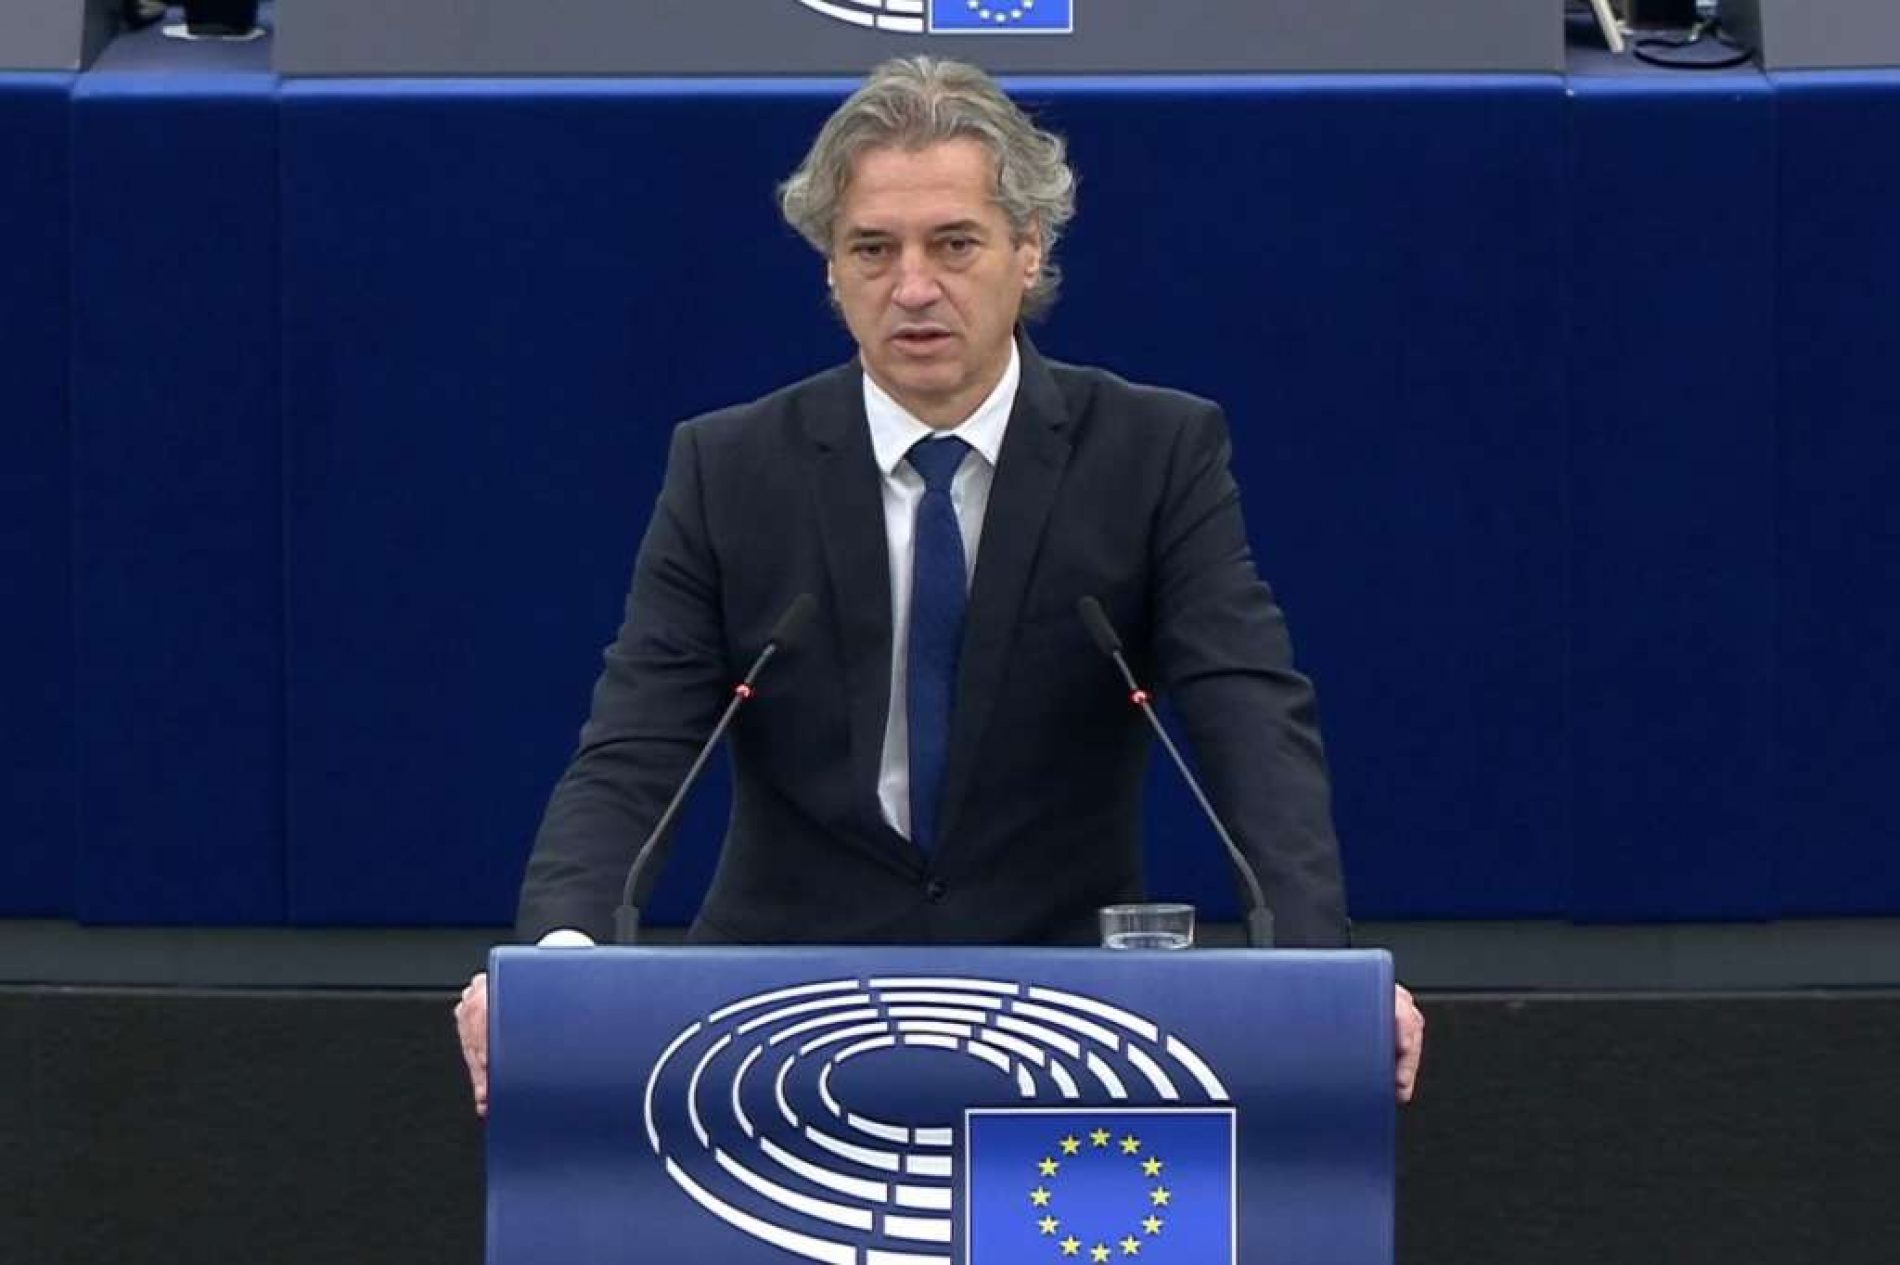 Golob: Bosna i Hercegovina je bila najveća žrtva agresije zato trebamo pokazati da je u EU nismo zaboravili